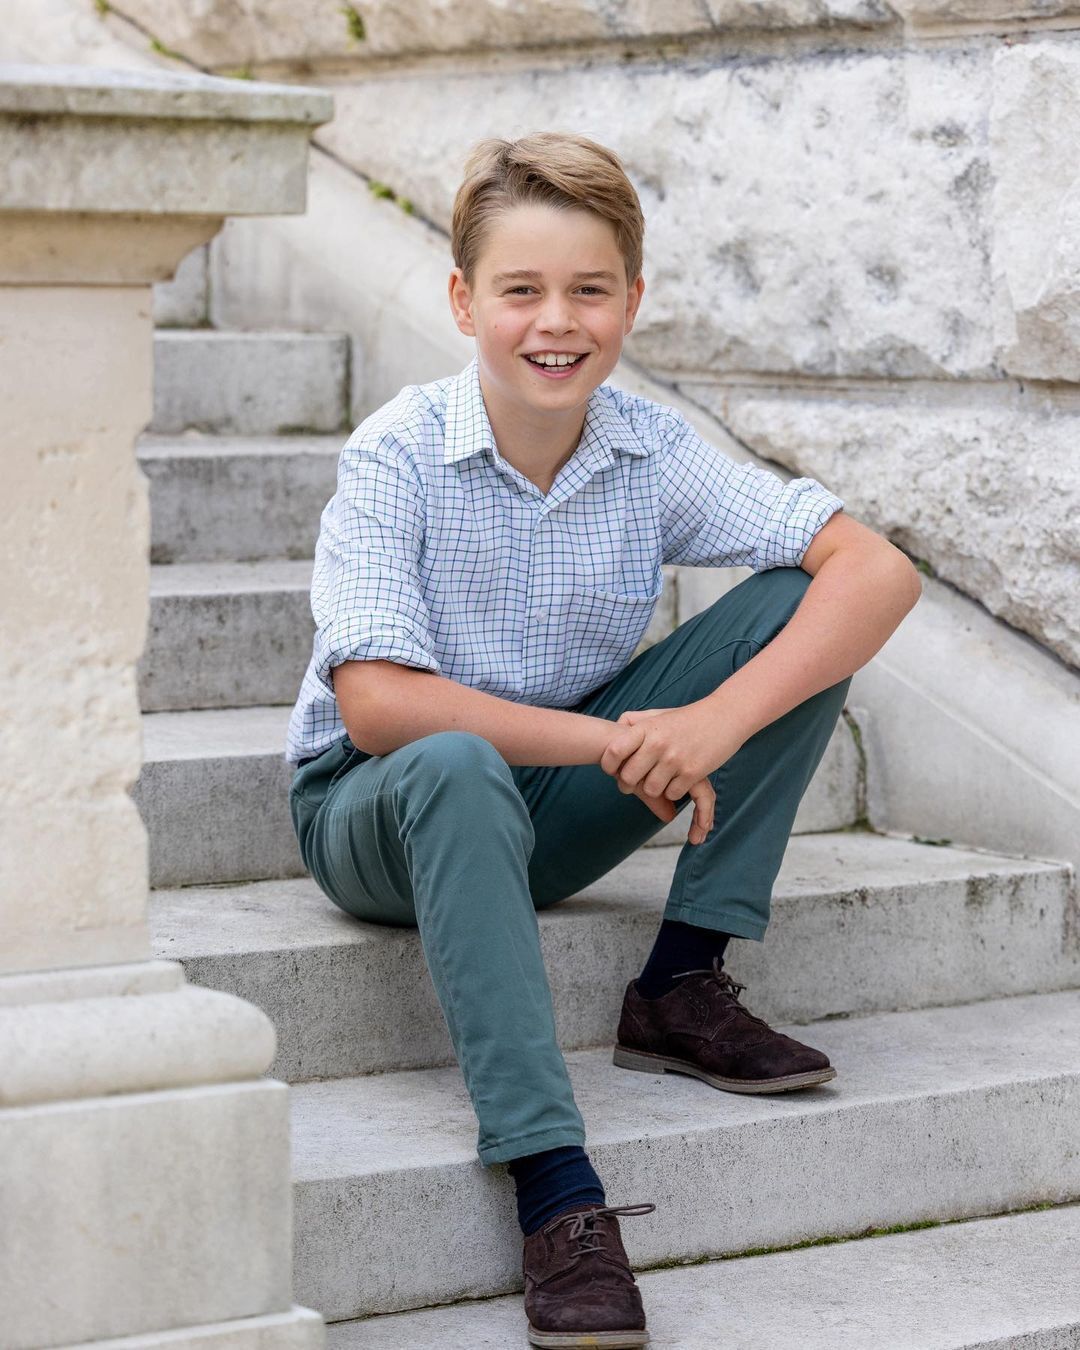 5 ознак, що 10-річного принца Джорджа вже готують до ролі короля: від зустрічей з Єлизаветою II перед її смертю до "розумного" одягу